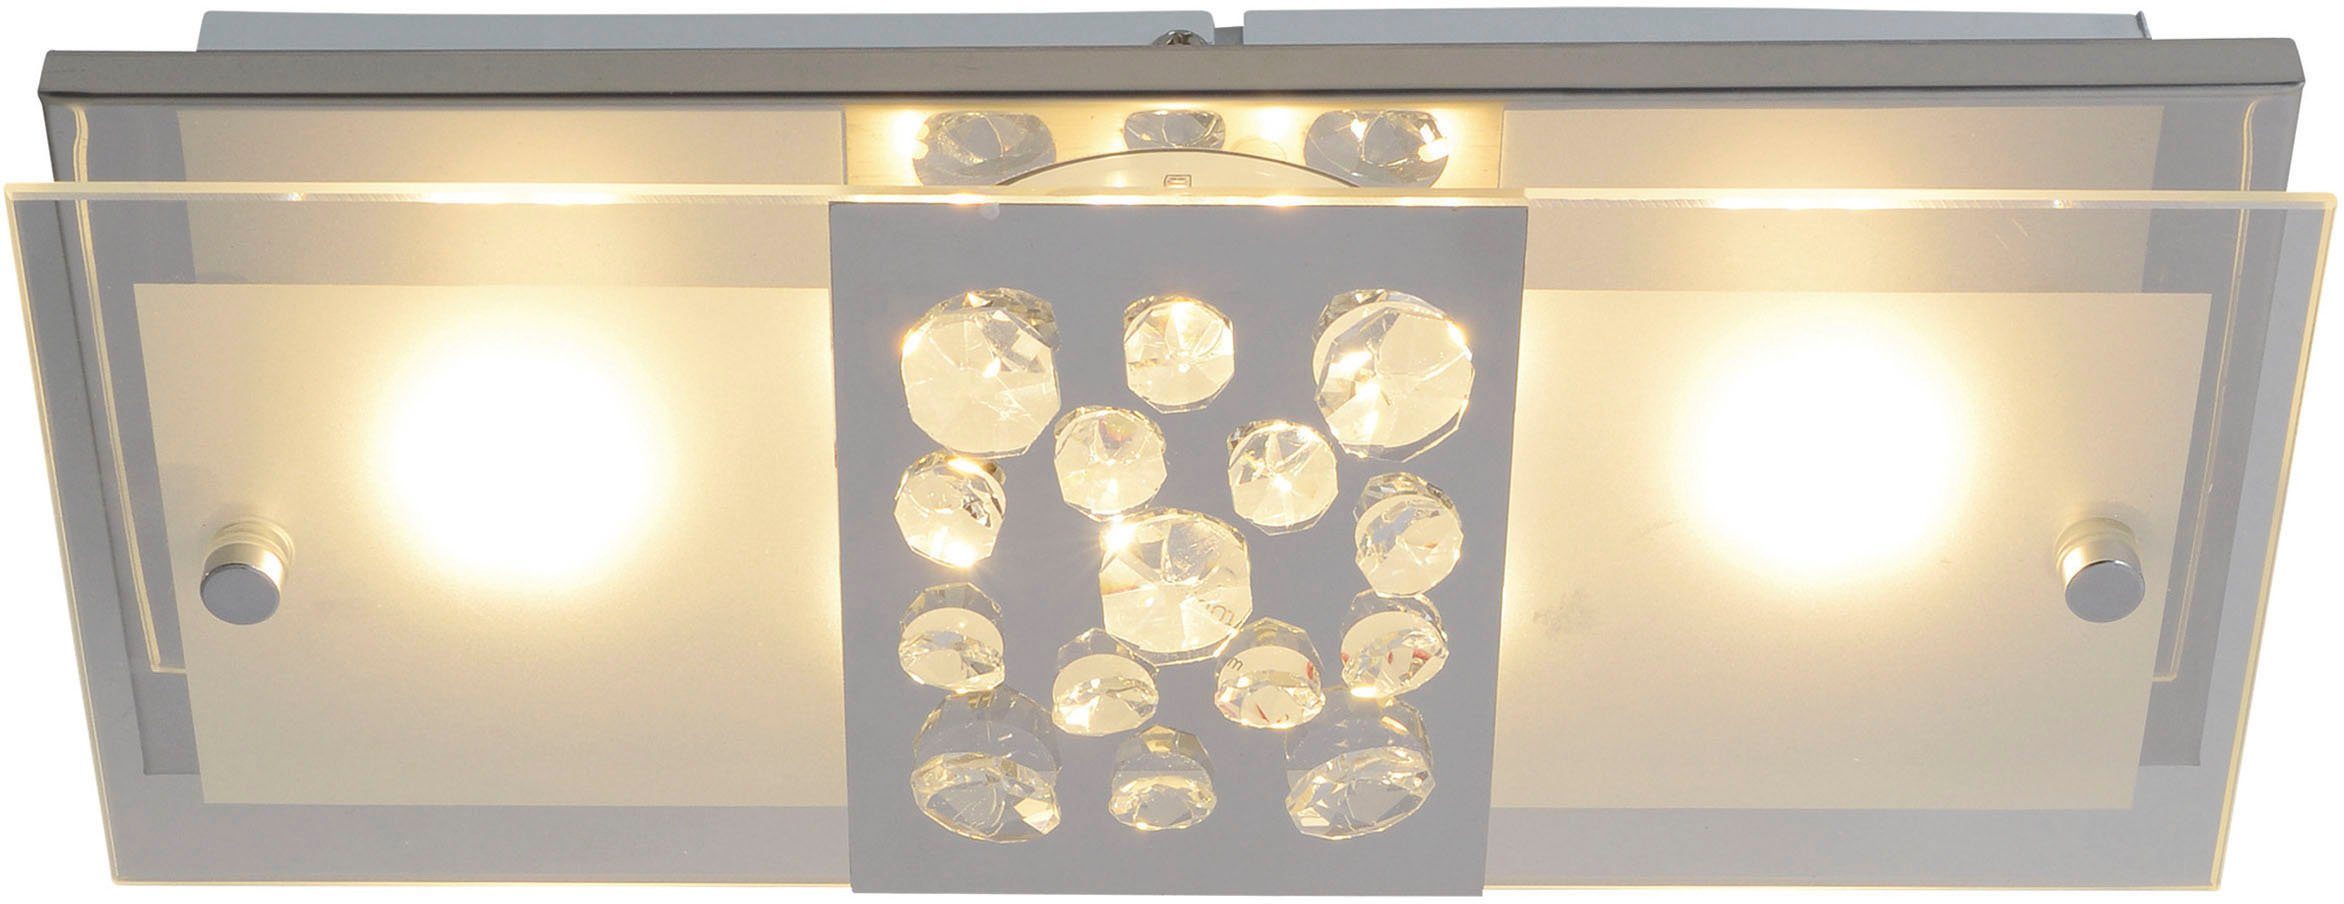 LED näve Kristallen, 11W Chur, incl. fest integriert, LED Warmweiß, teilsatiniert total mit chrom LED Deckenleuchte